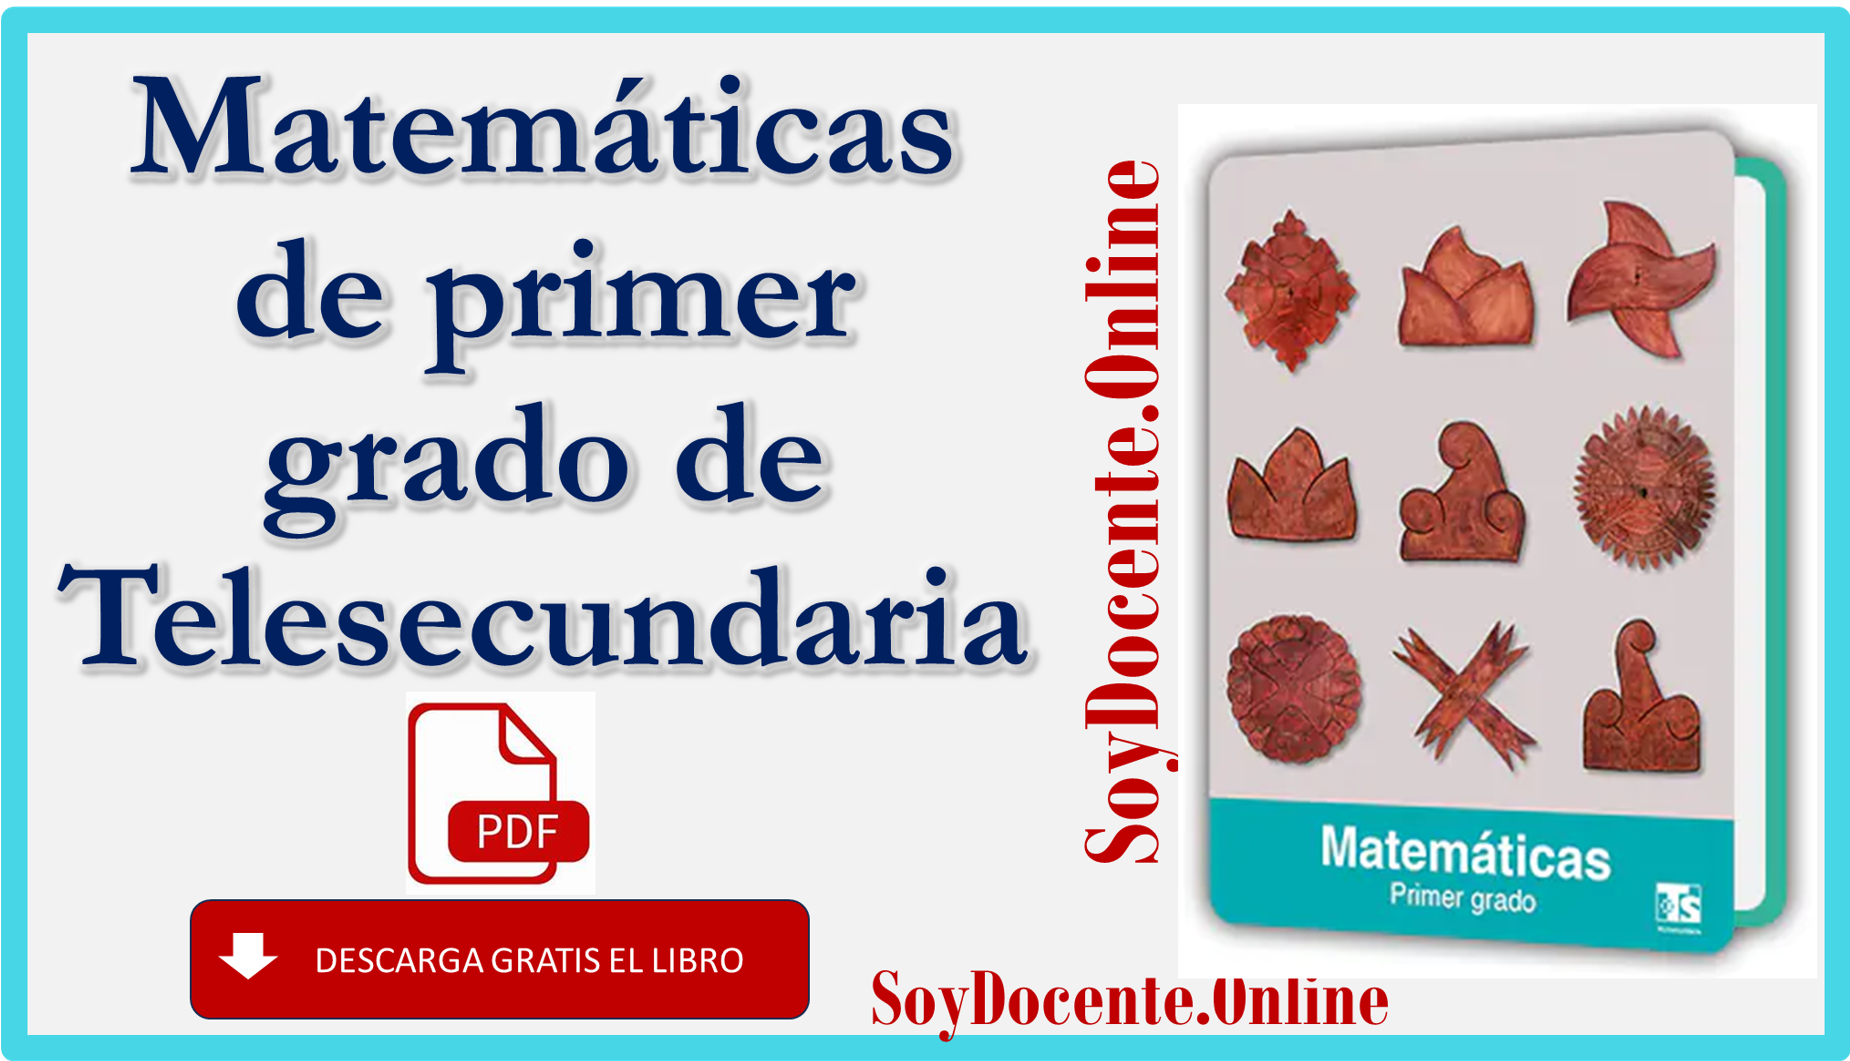 Aquí podrás descargar en formato de PDF el Libro de Matemáticas primer grado de Telesecundaria, obra oficial de la SEP, distribuido por CONALITEG